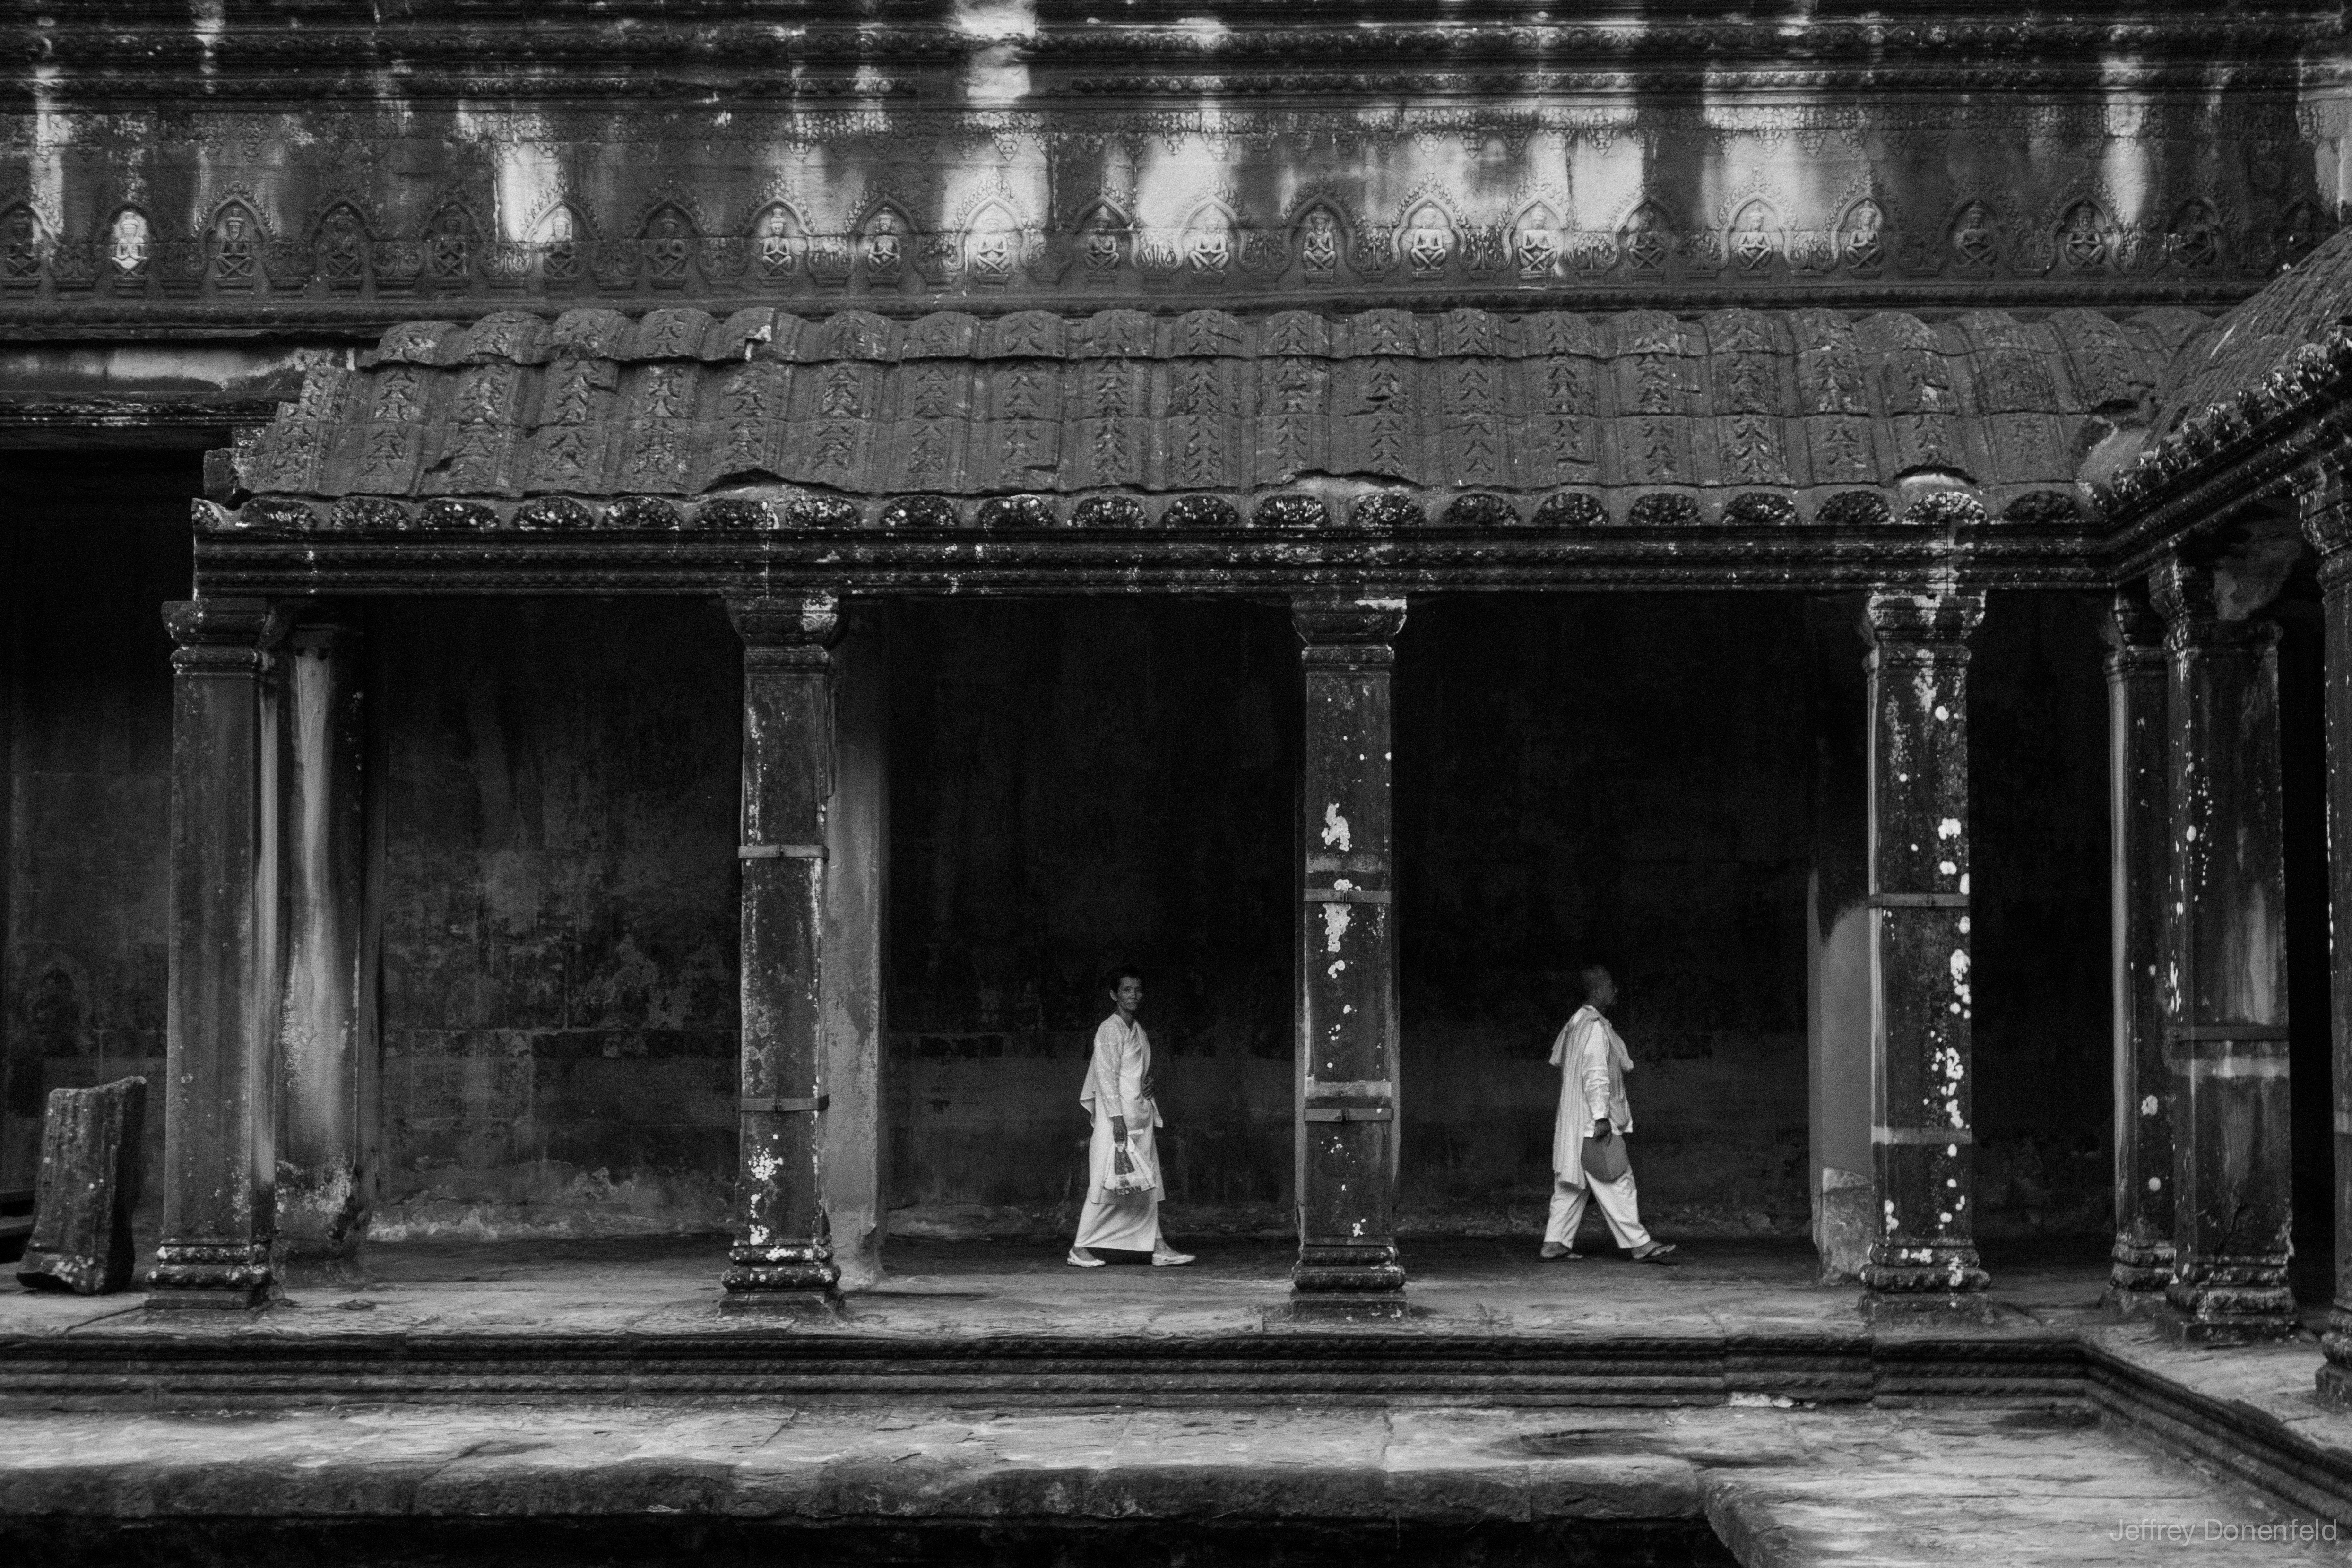 Exploring Angkor Wat, Cambodia